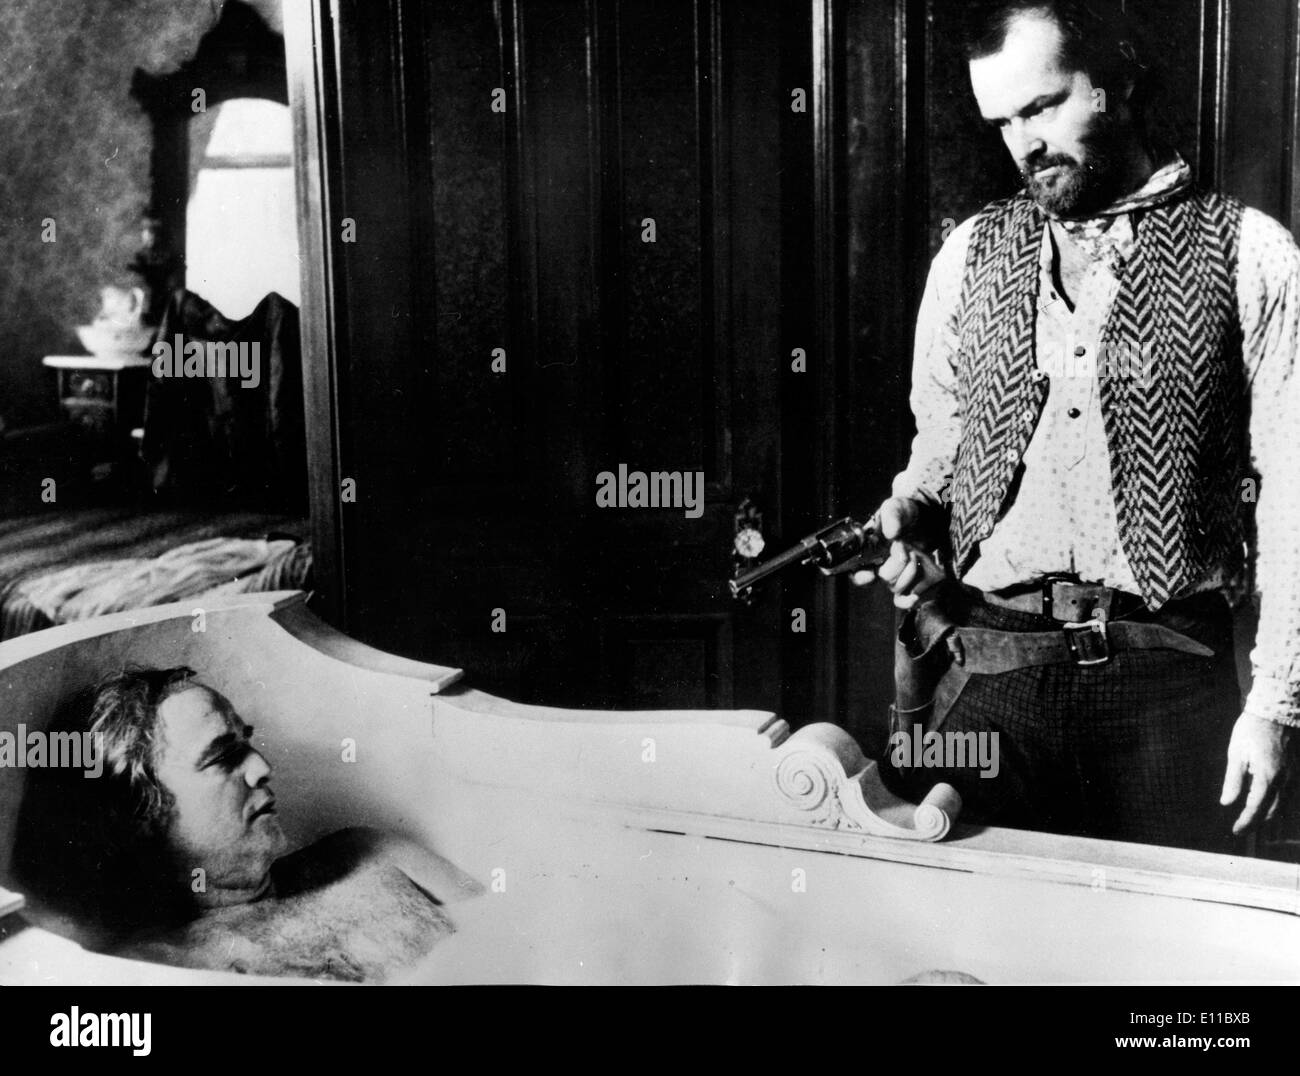 Marlon Brando and Jack Nicholson in film scene Stock Photo